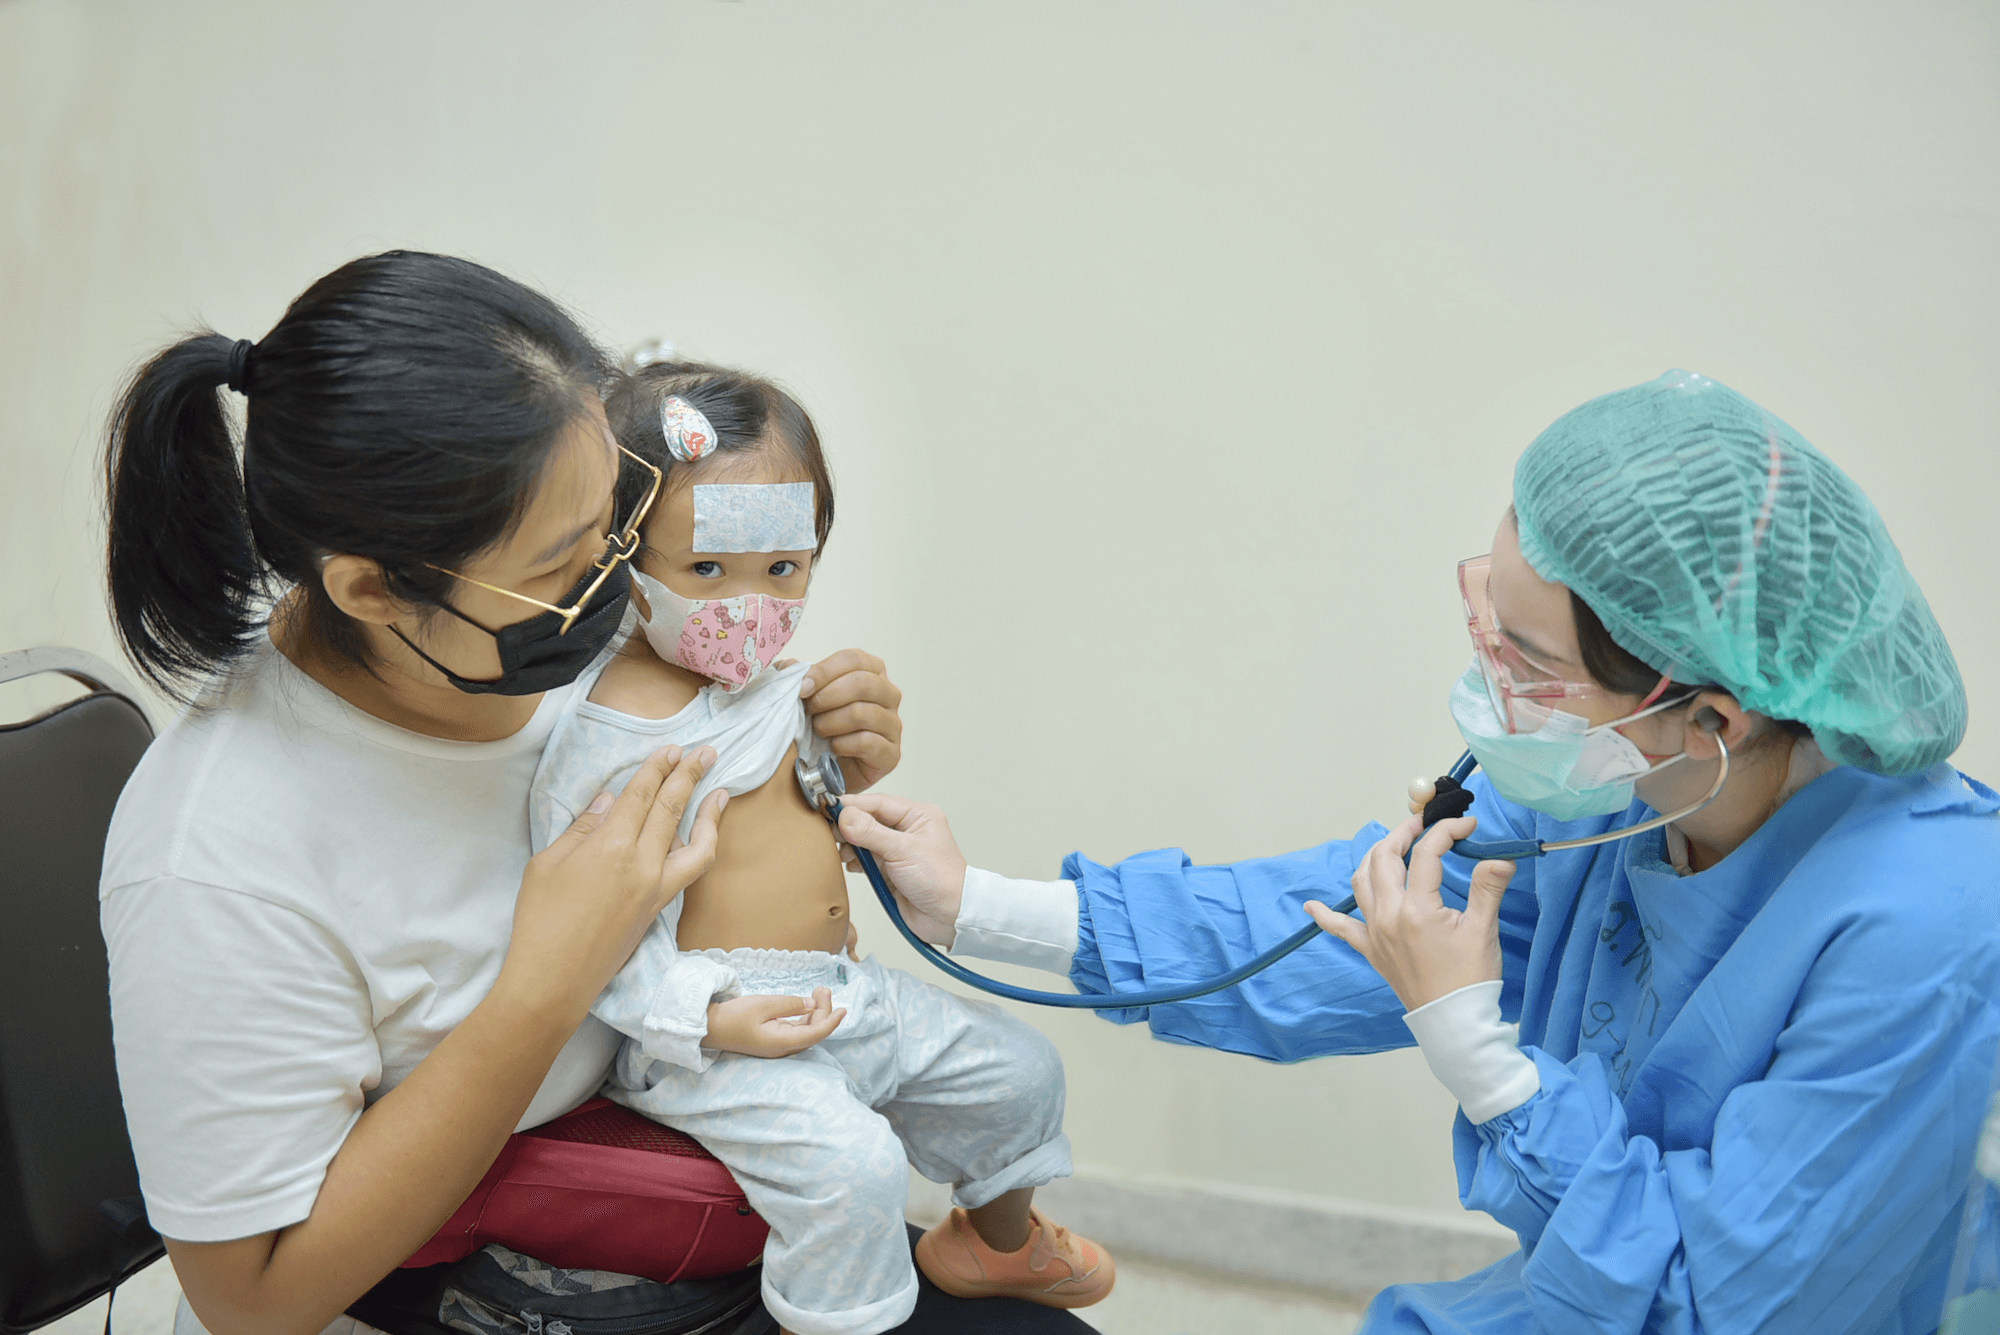 เด็กเล็กได้รับการตรวจคัดกรองโควิด-19 กองทุนอาคารเฉลิมพระเกียรติฯ มูลนิธิโรงพยาบาลเด็ก